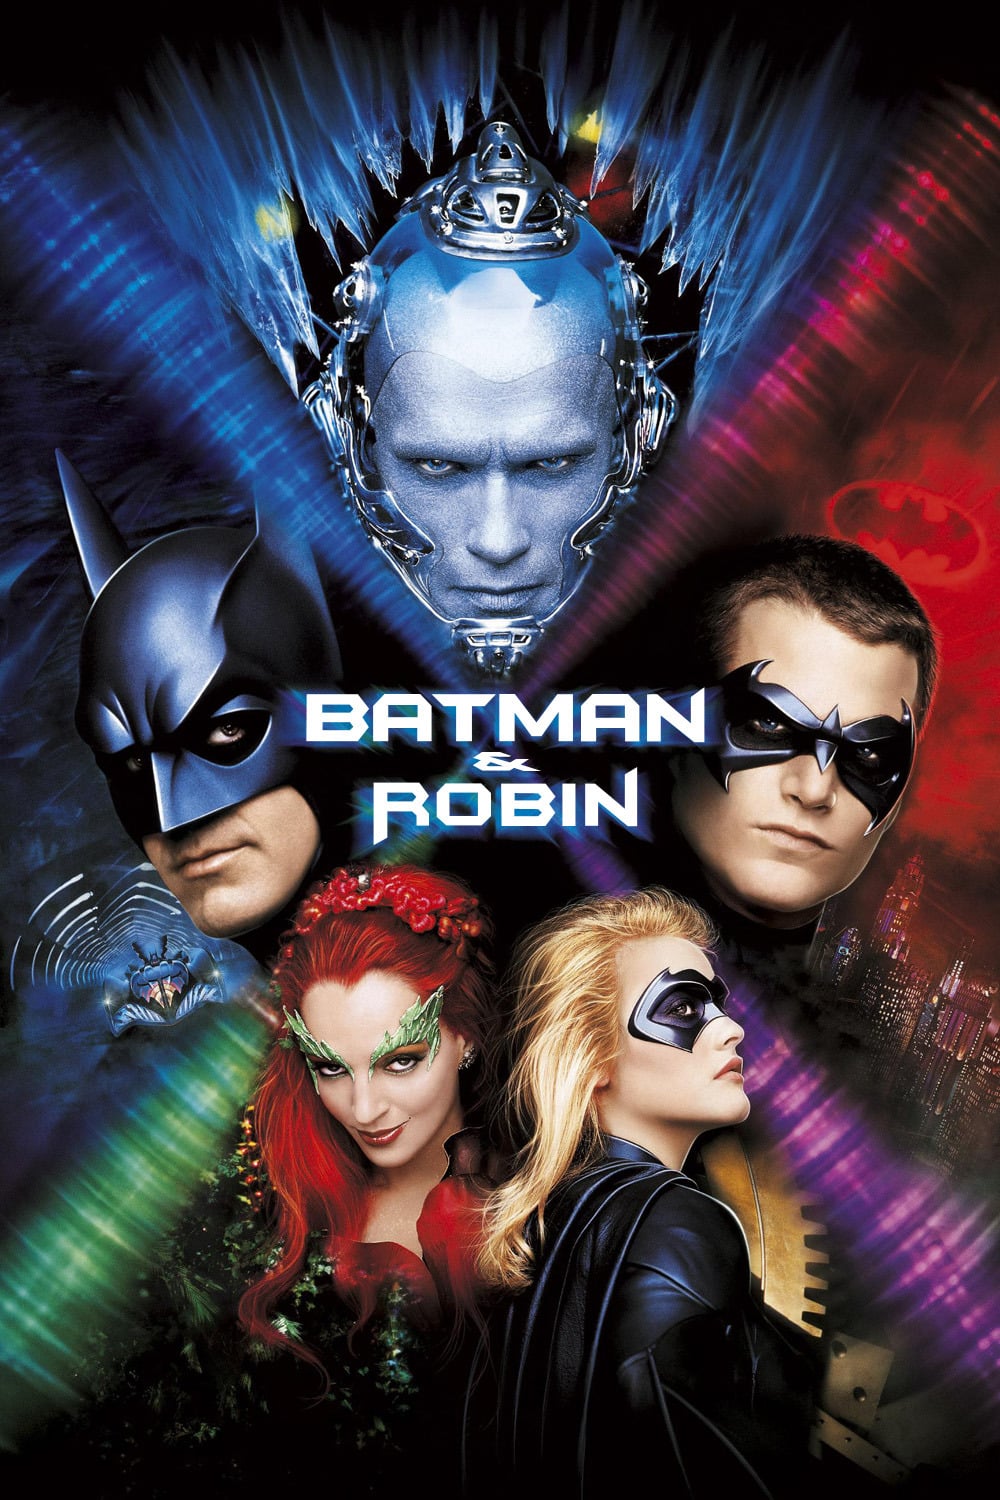 Plakat von "Batman & Robin"